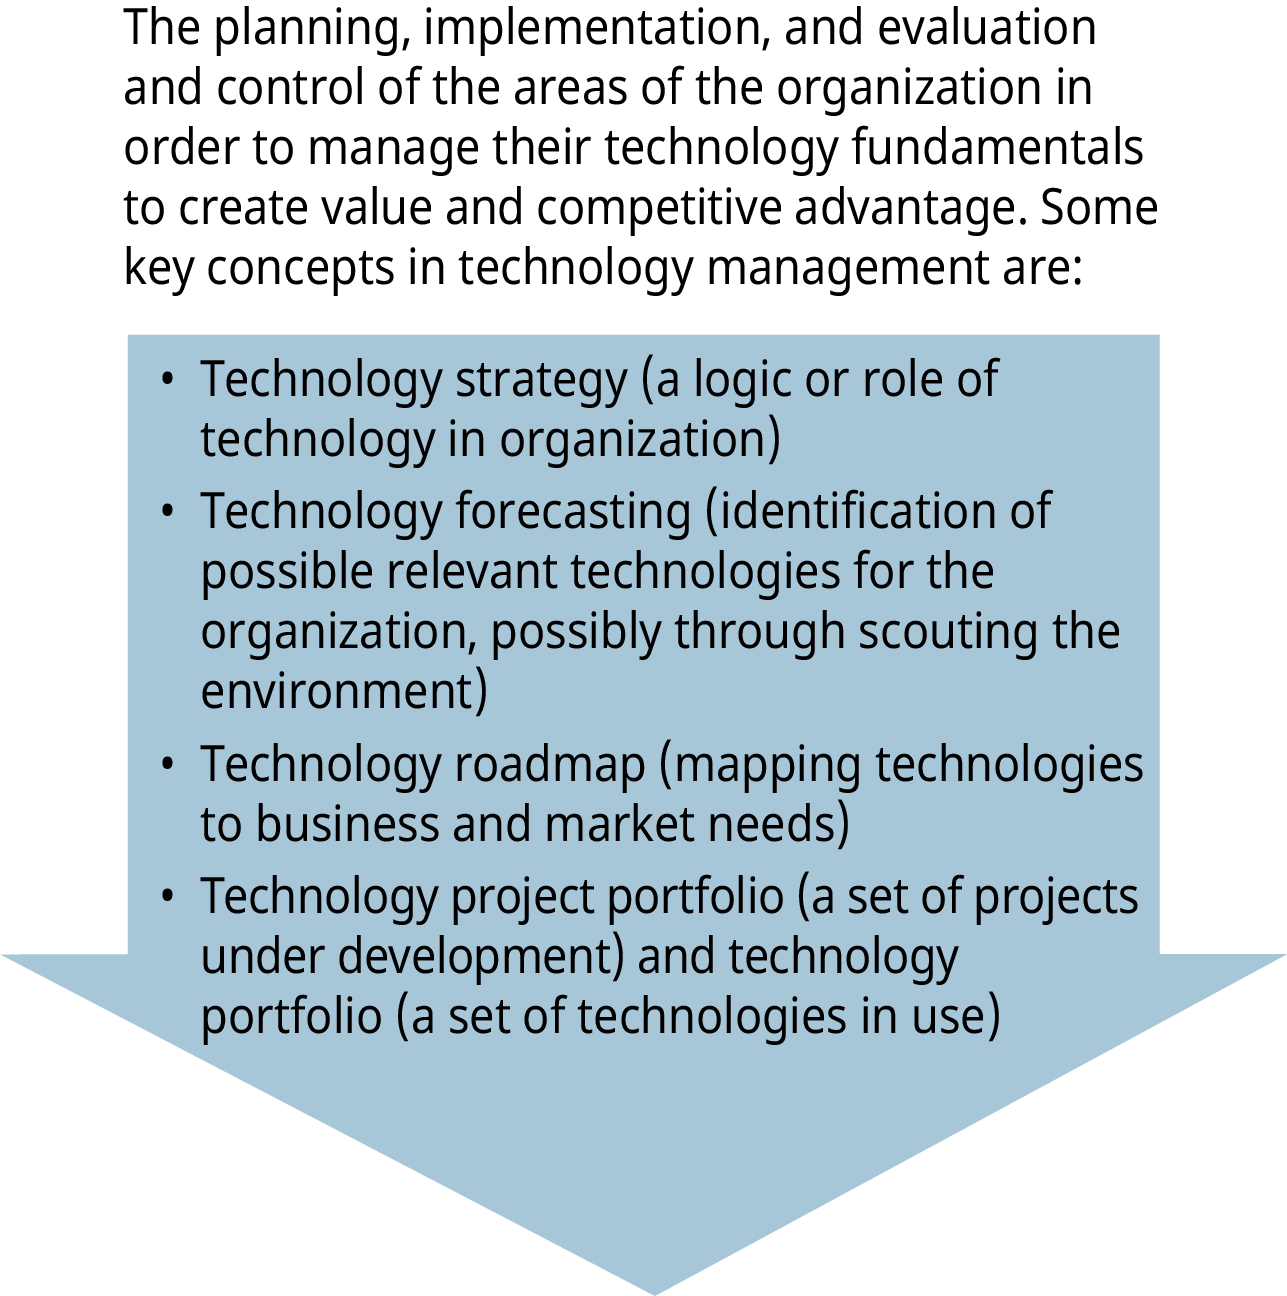 图表说明了技术管理的概念，向下箭头列出了四个关键概念。